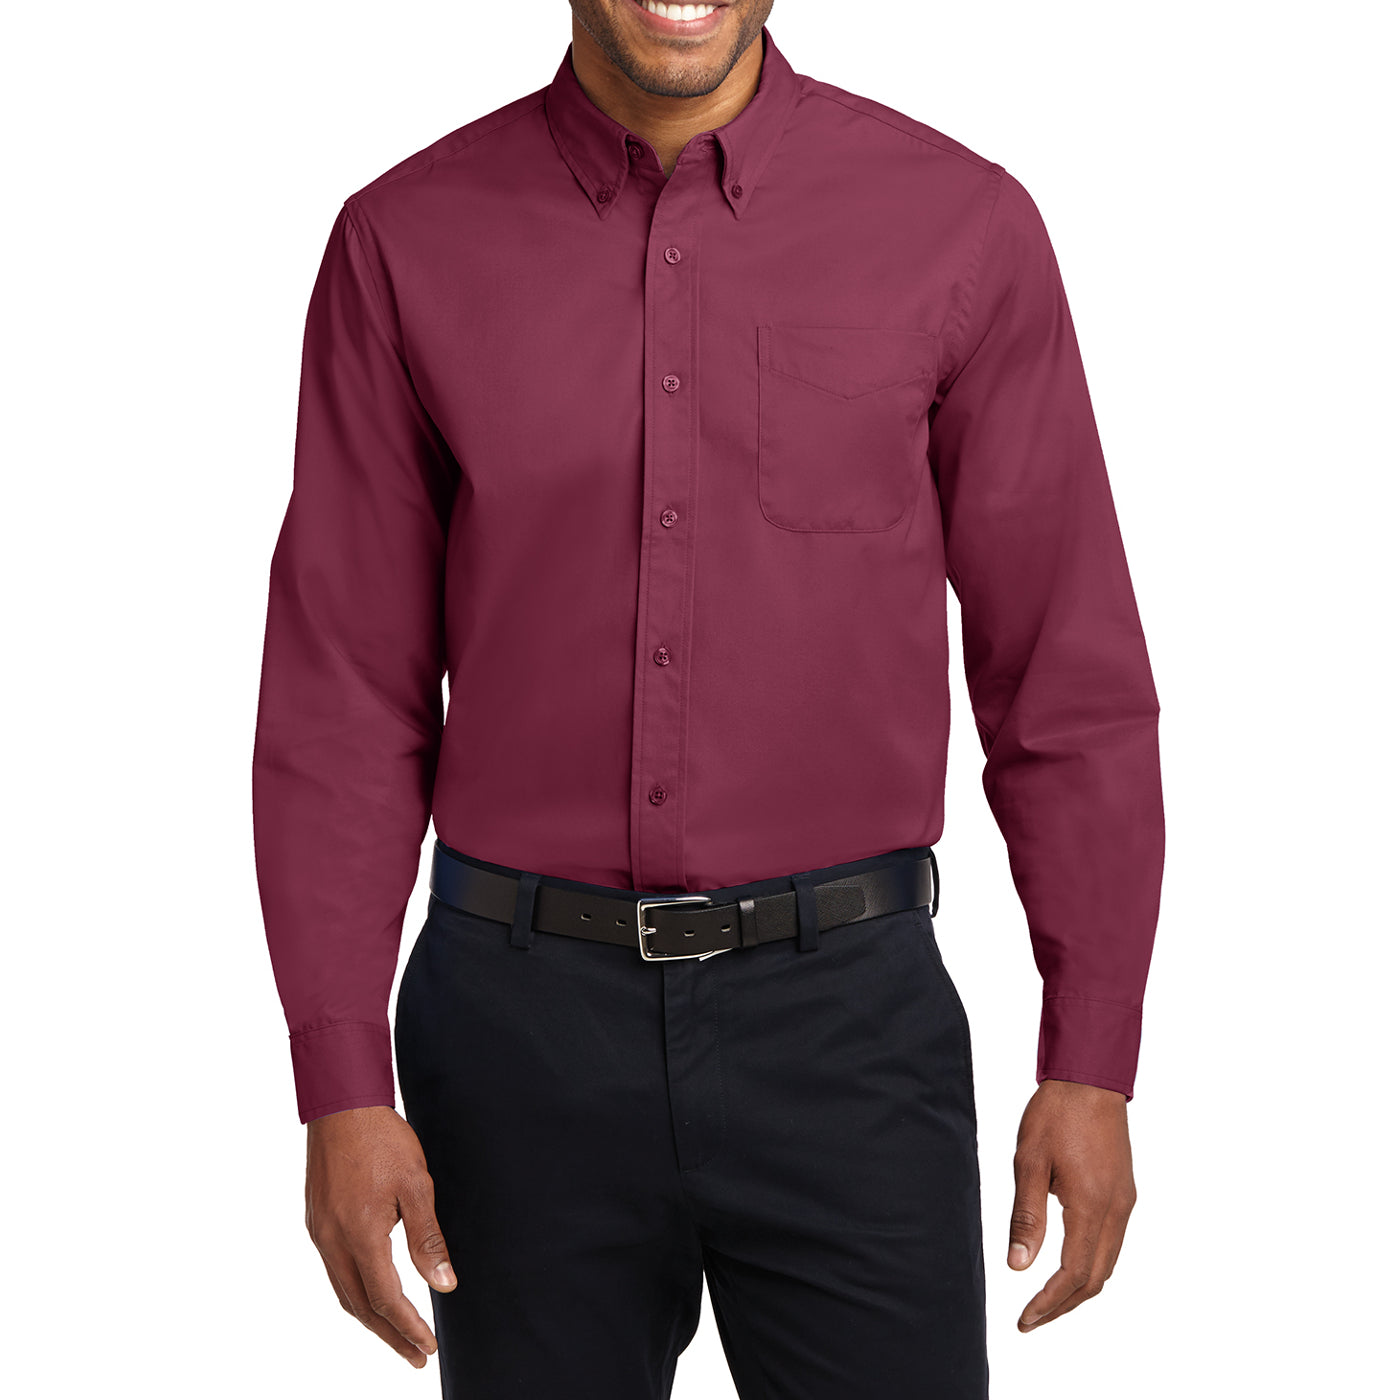 Men's Long Sleeve Easy Care Shirt - Burgundy/ Light Stone - Front